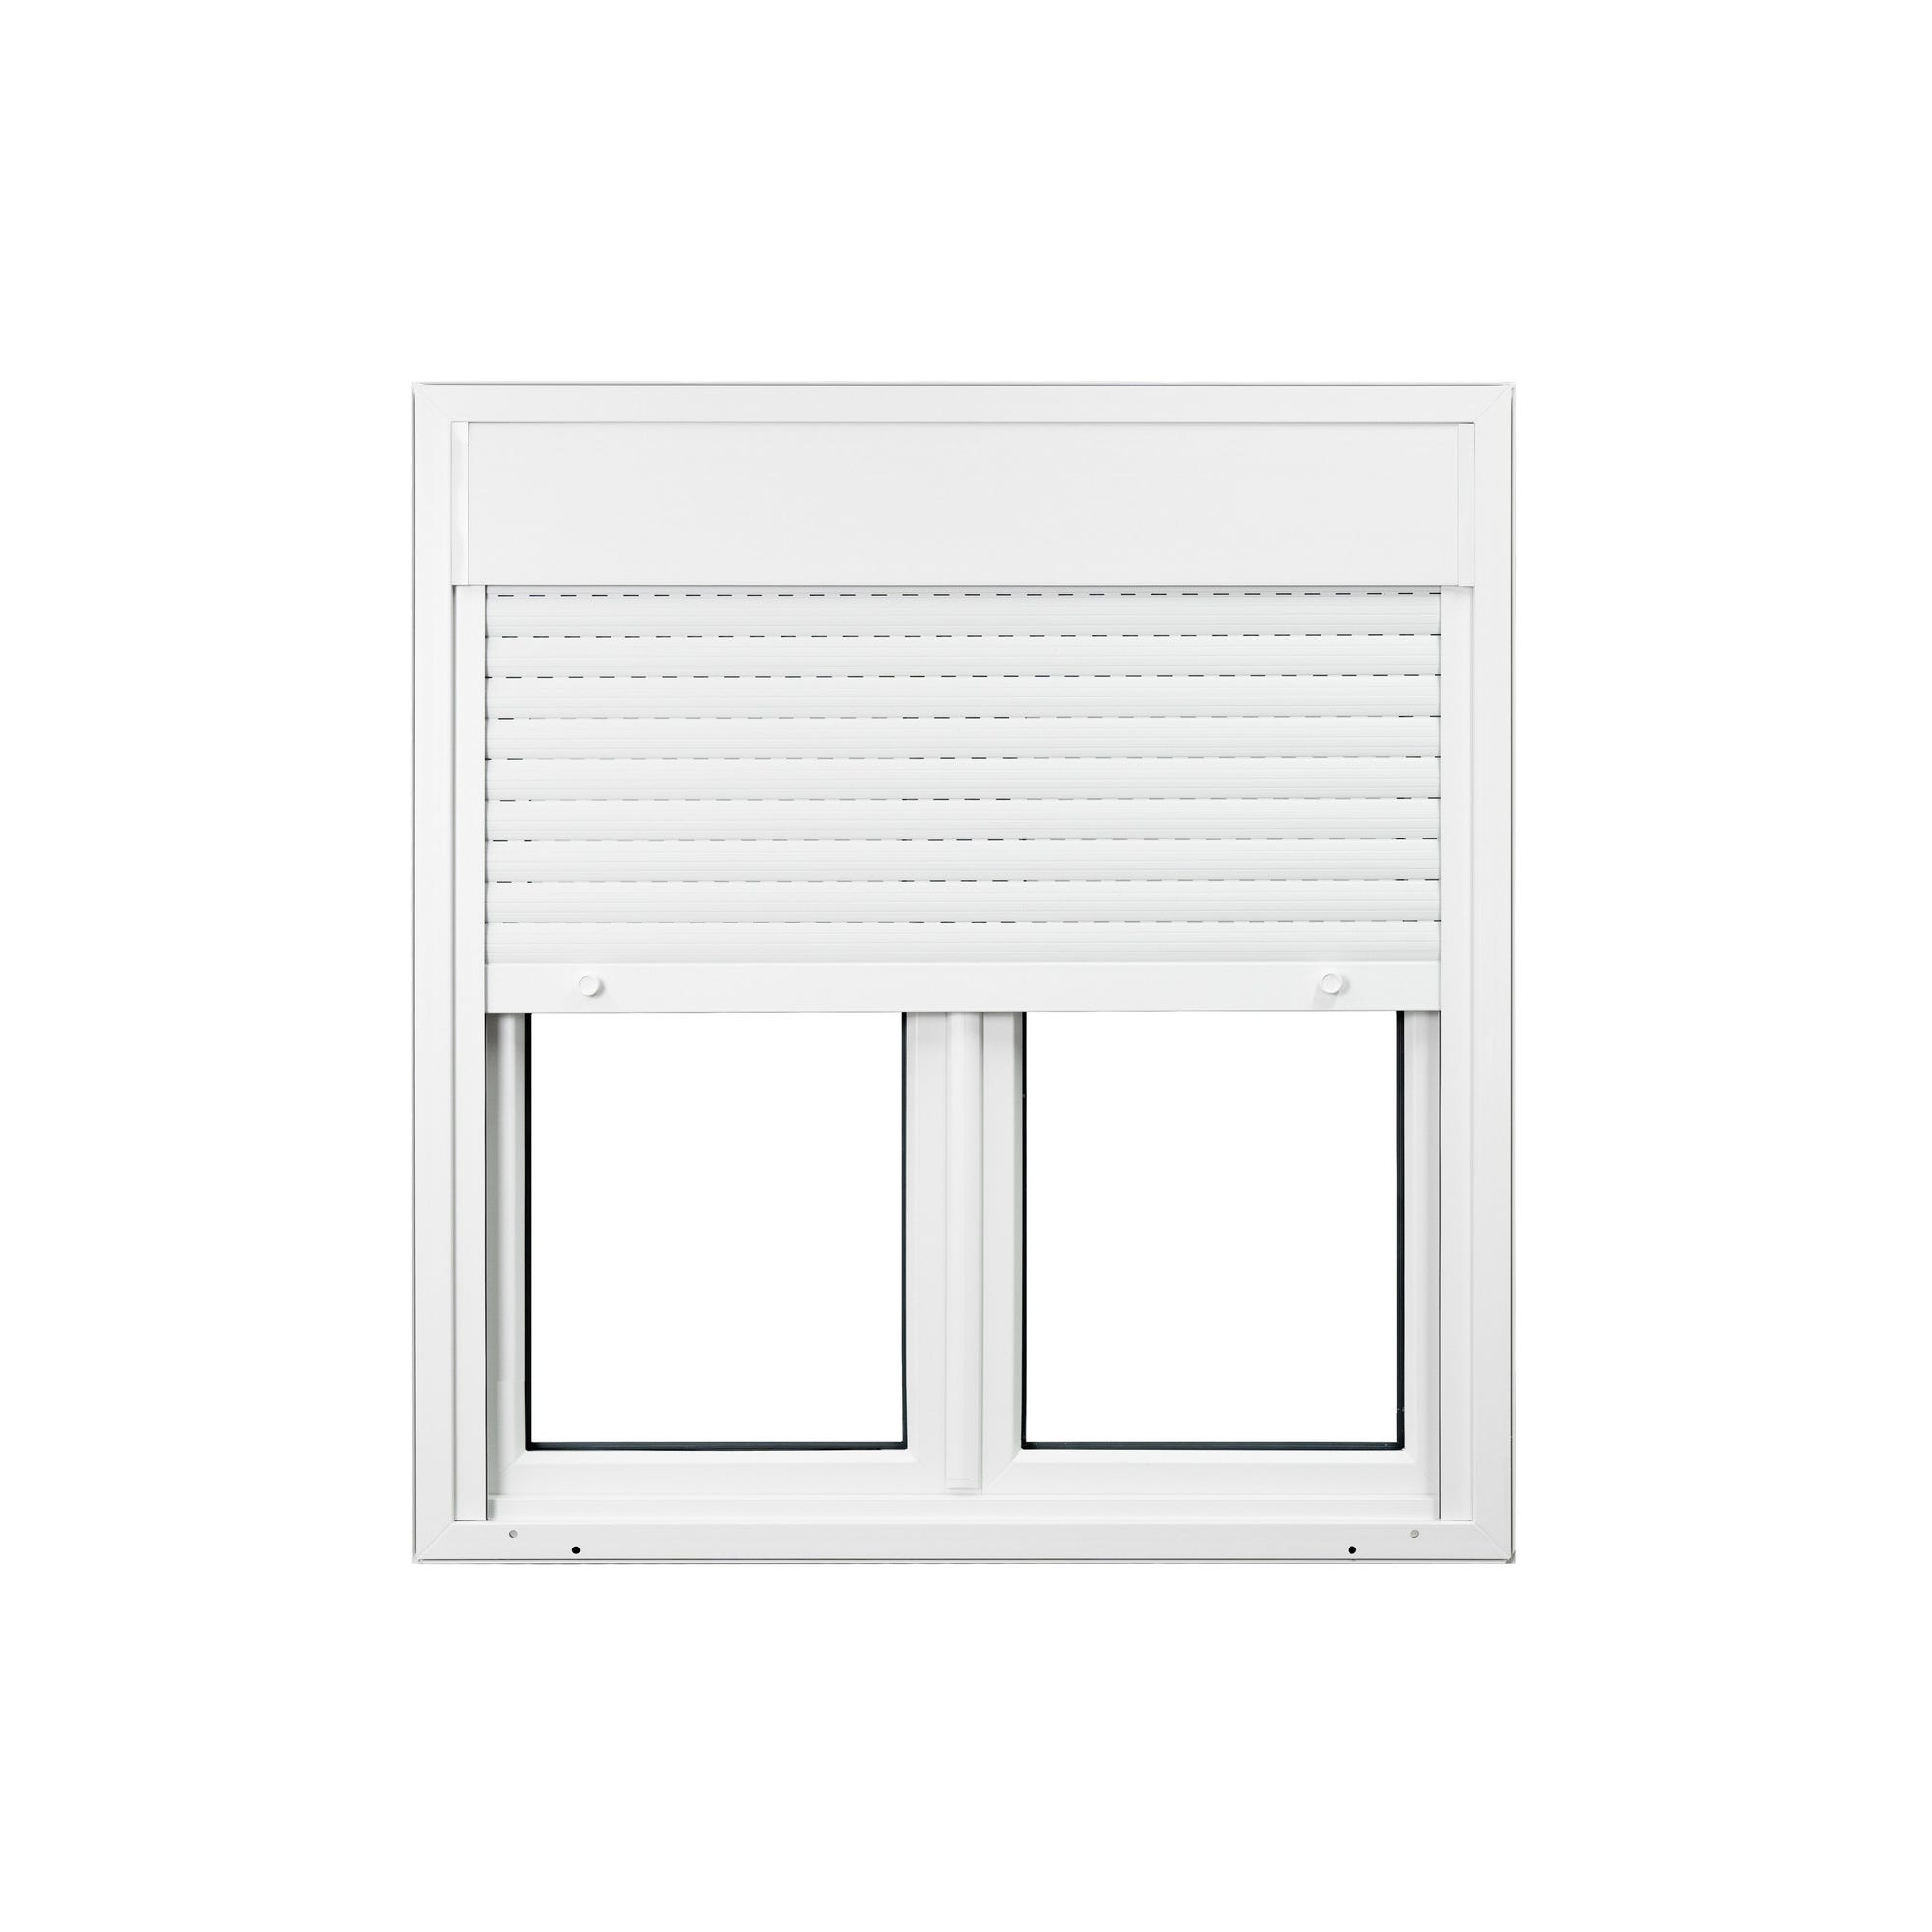 Fenêtre PVC 2 vantaux avec volet roulant intégré monobloc H.125 x l.100 cm - GROSFILLEX 2